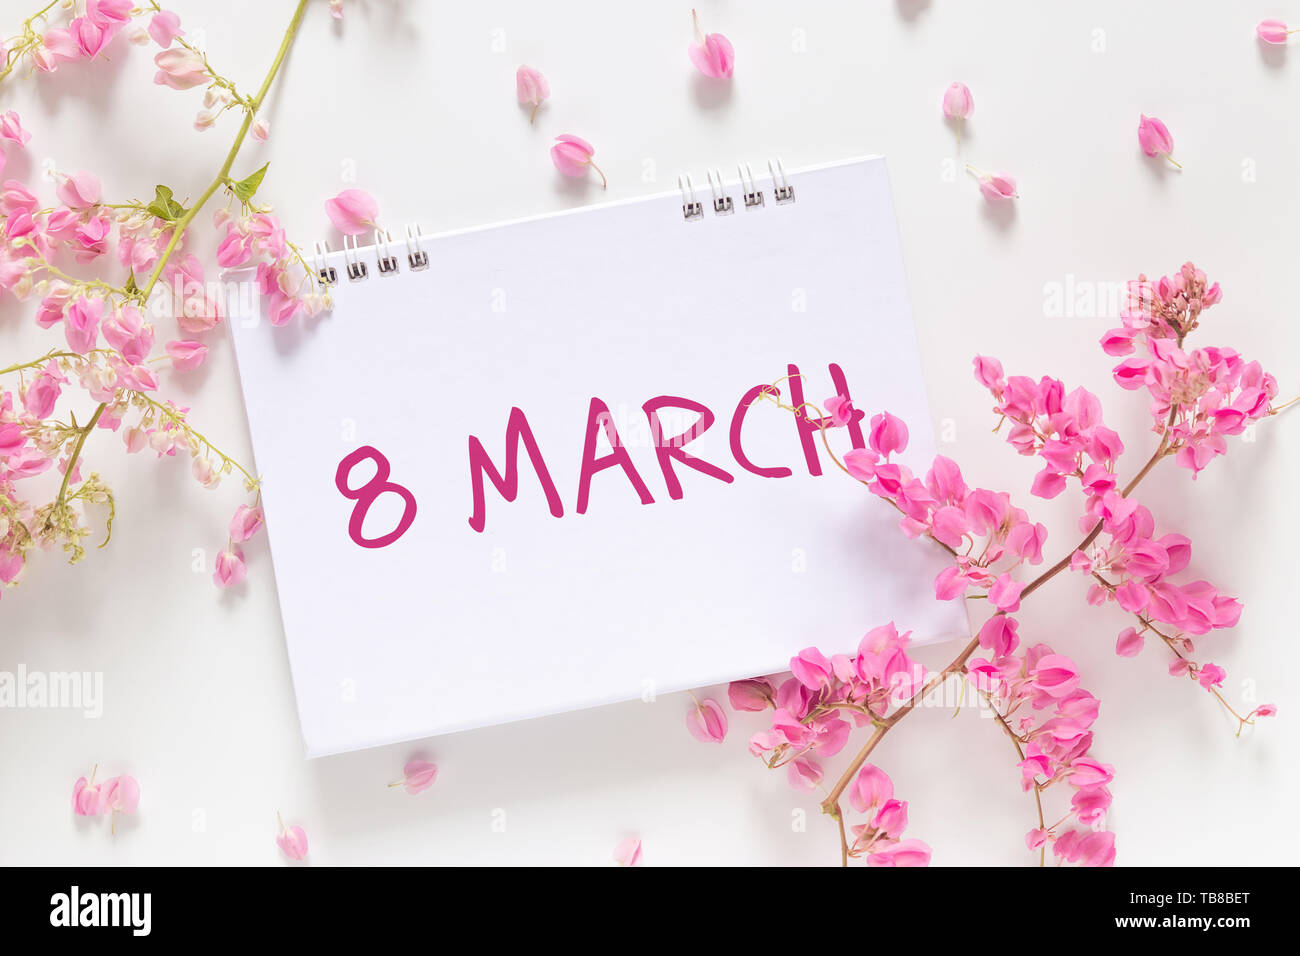 Día Internacional de la mujer. plano de laicos calendario en blanco con las palabras 'Marco 8' decorar con flor rosa aislado sobre fondo blanco. Foto de stock